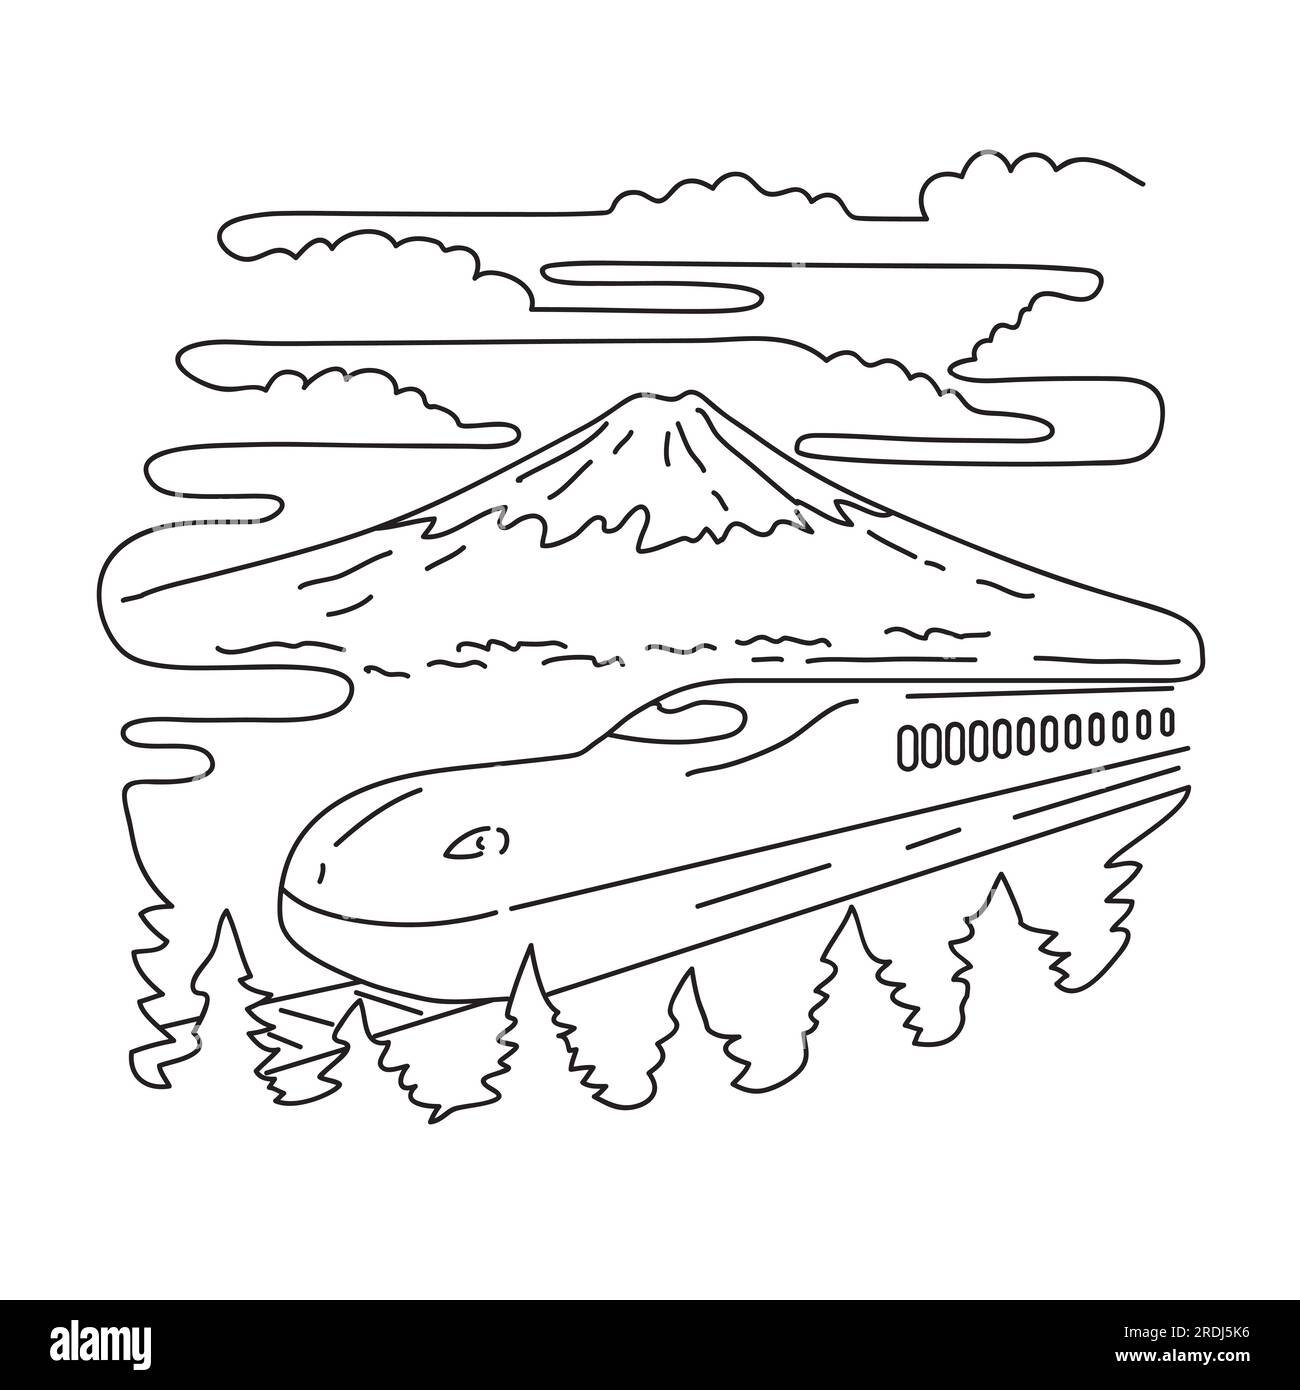 Illustrazione mono line del Monte Fuji e del treno proiettile Shinkansen sull'isola di Honshu all'interno del Parco Nazionale Fuji-Hakone-Izu in Giappone fatto in monolina Foto Stock